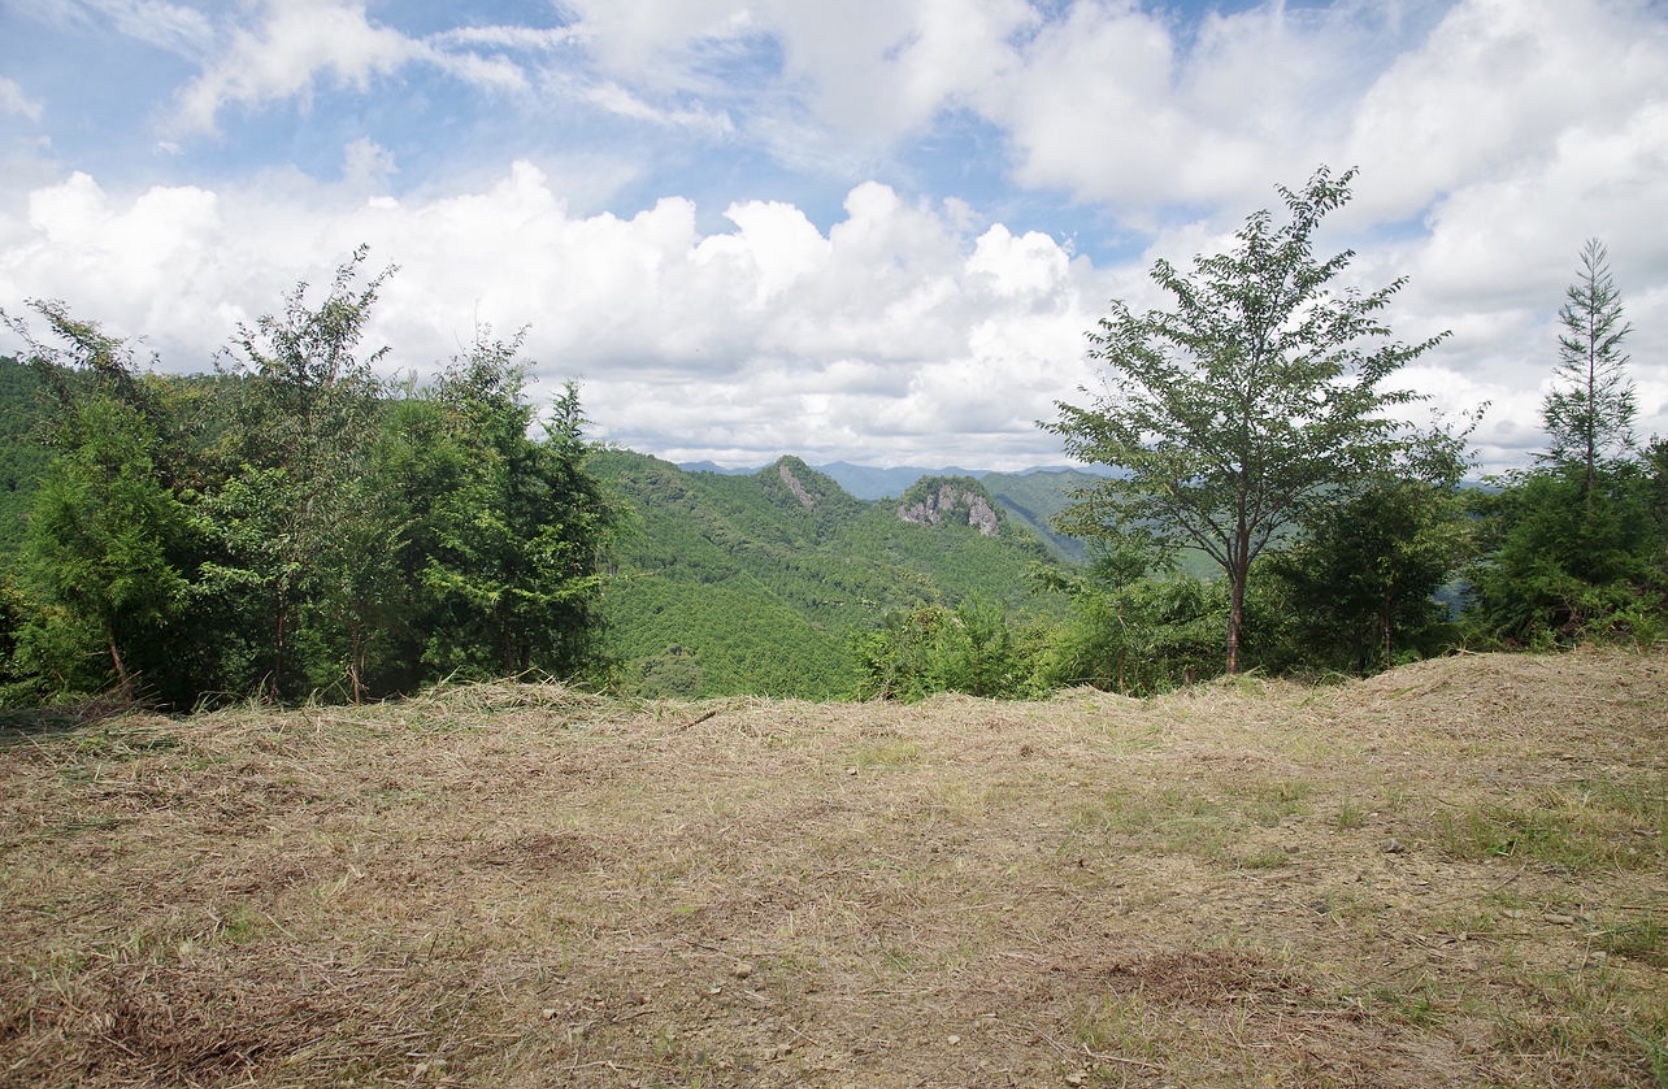   和歌山県東牟婁郡古座川町の山間部にある1万3000坪の眺望が特に良い山林です。 165万円(応相談)